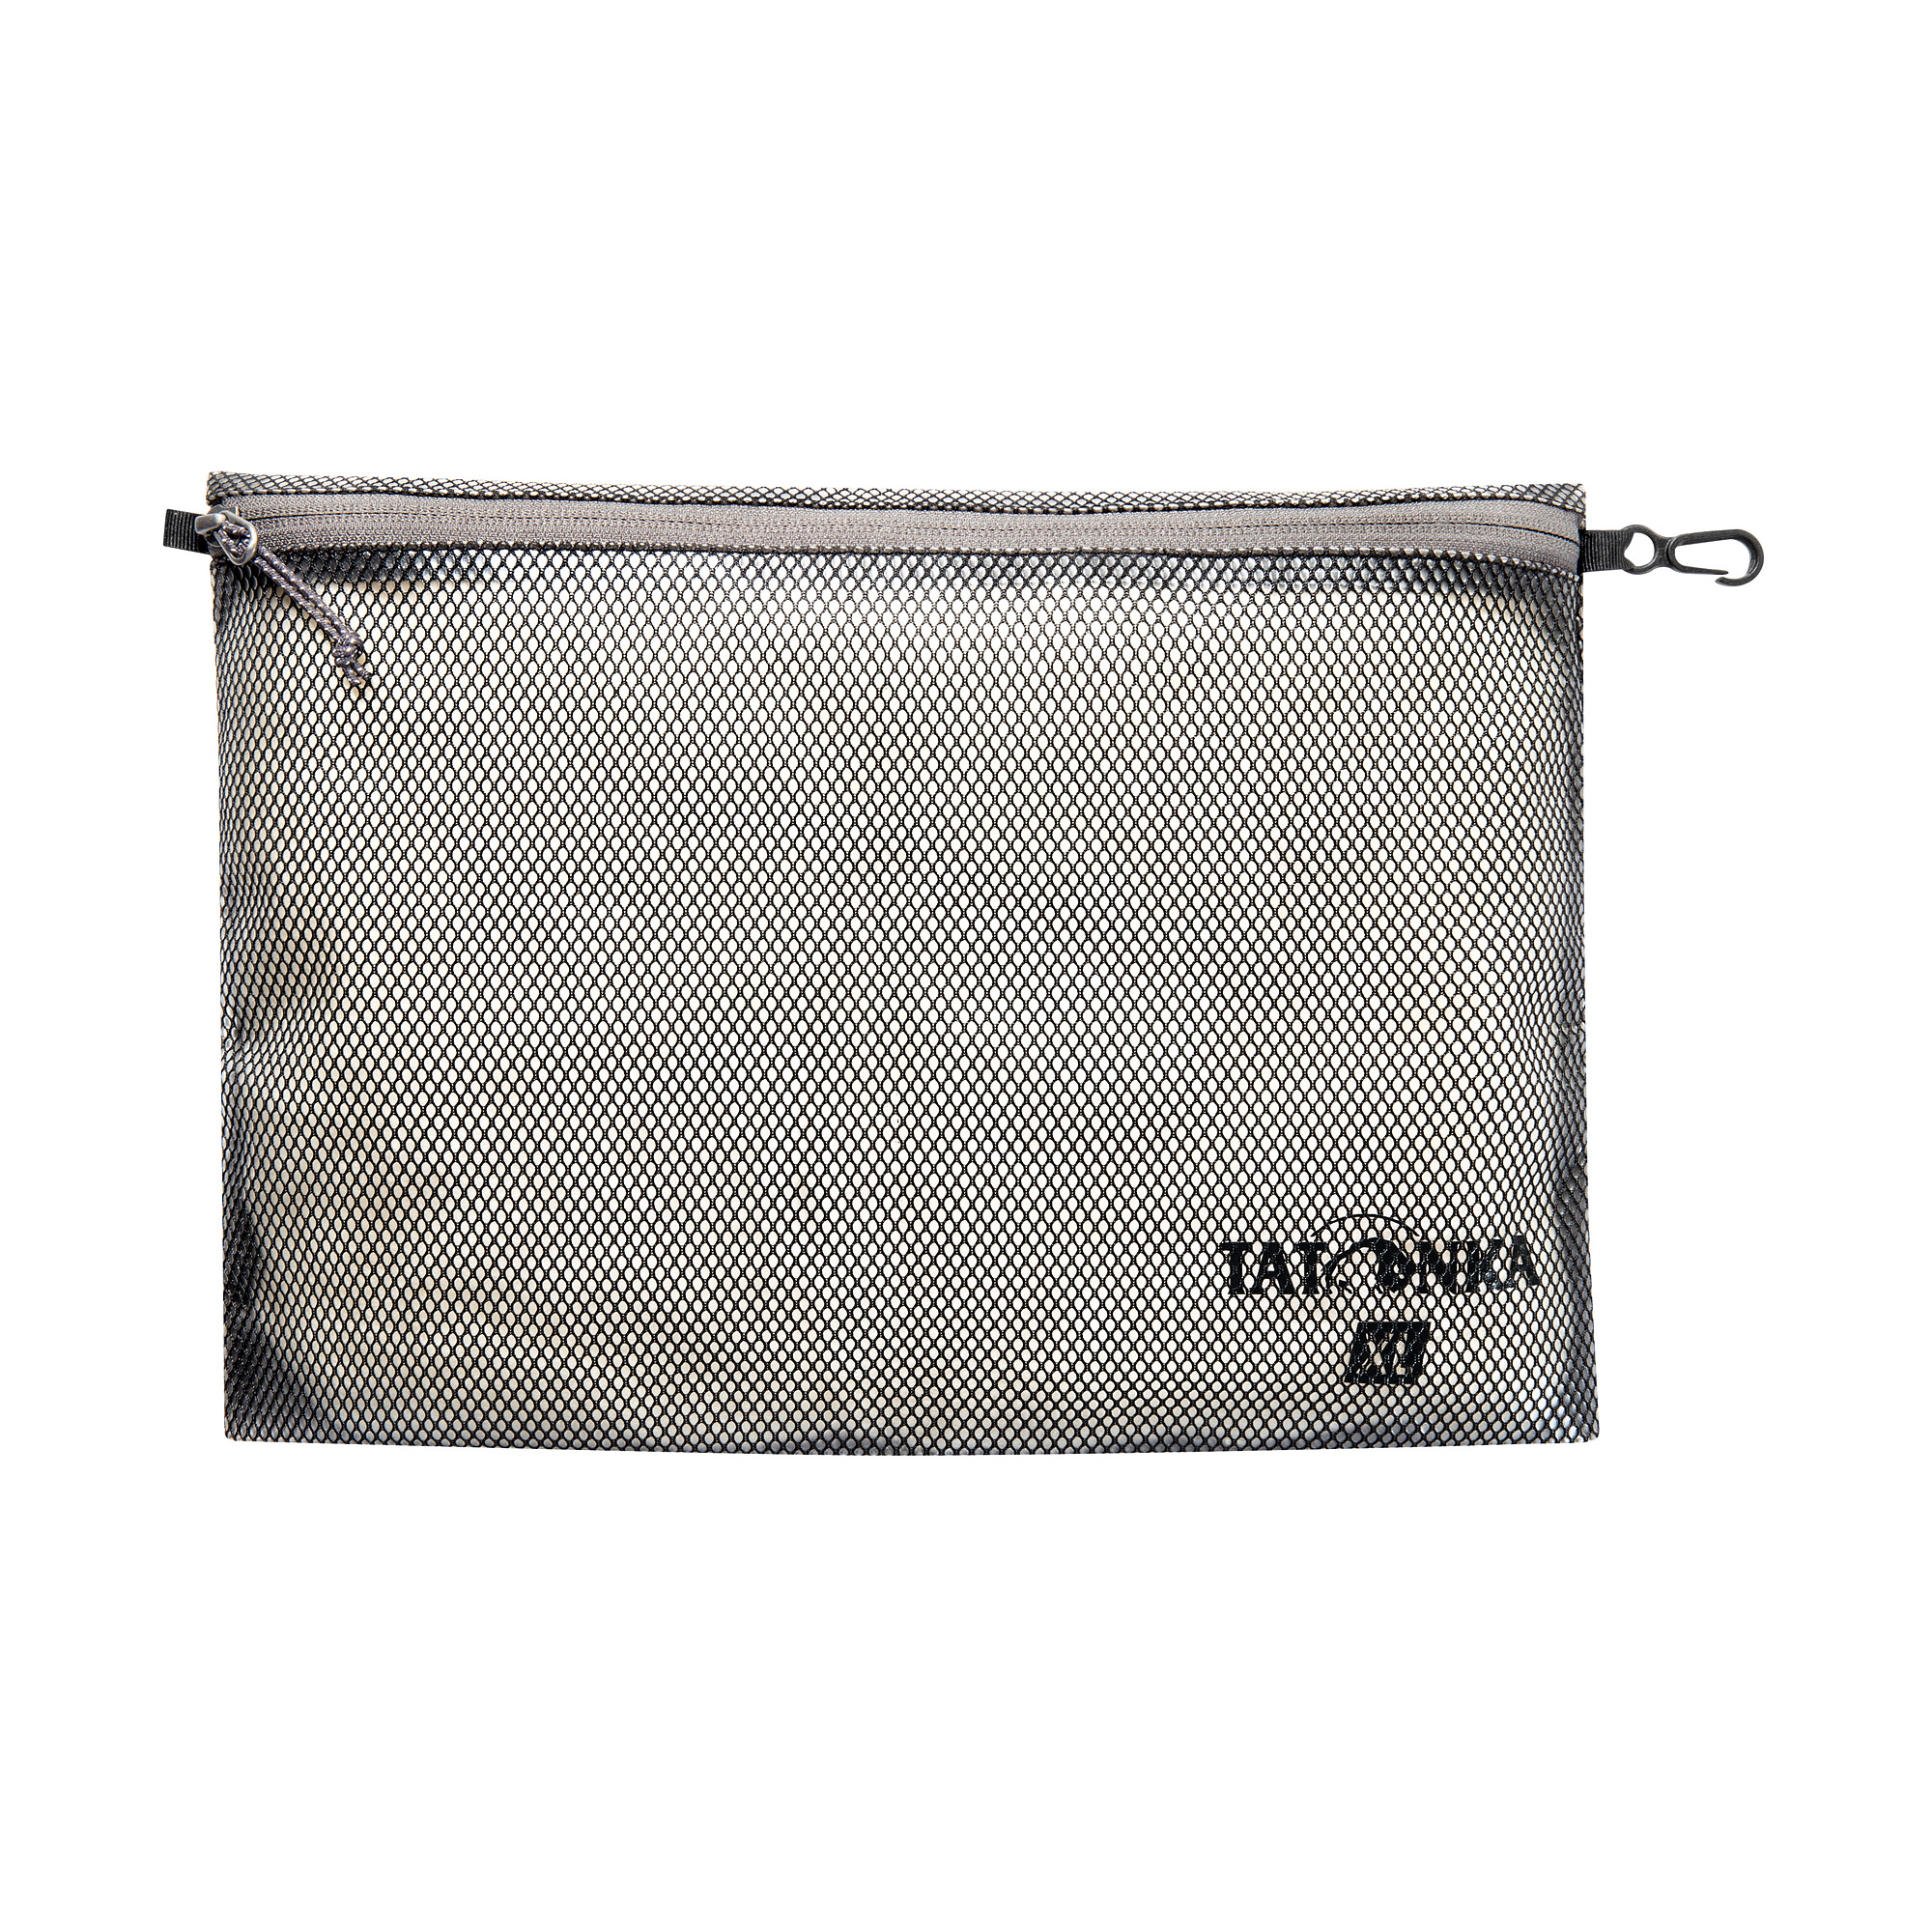 Tatonka Zip Pouch 35 x 25cm black schwarz Rucksack-Zubehör 4013236355765